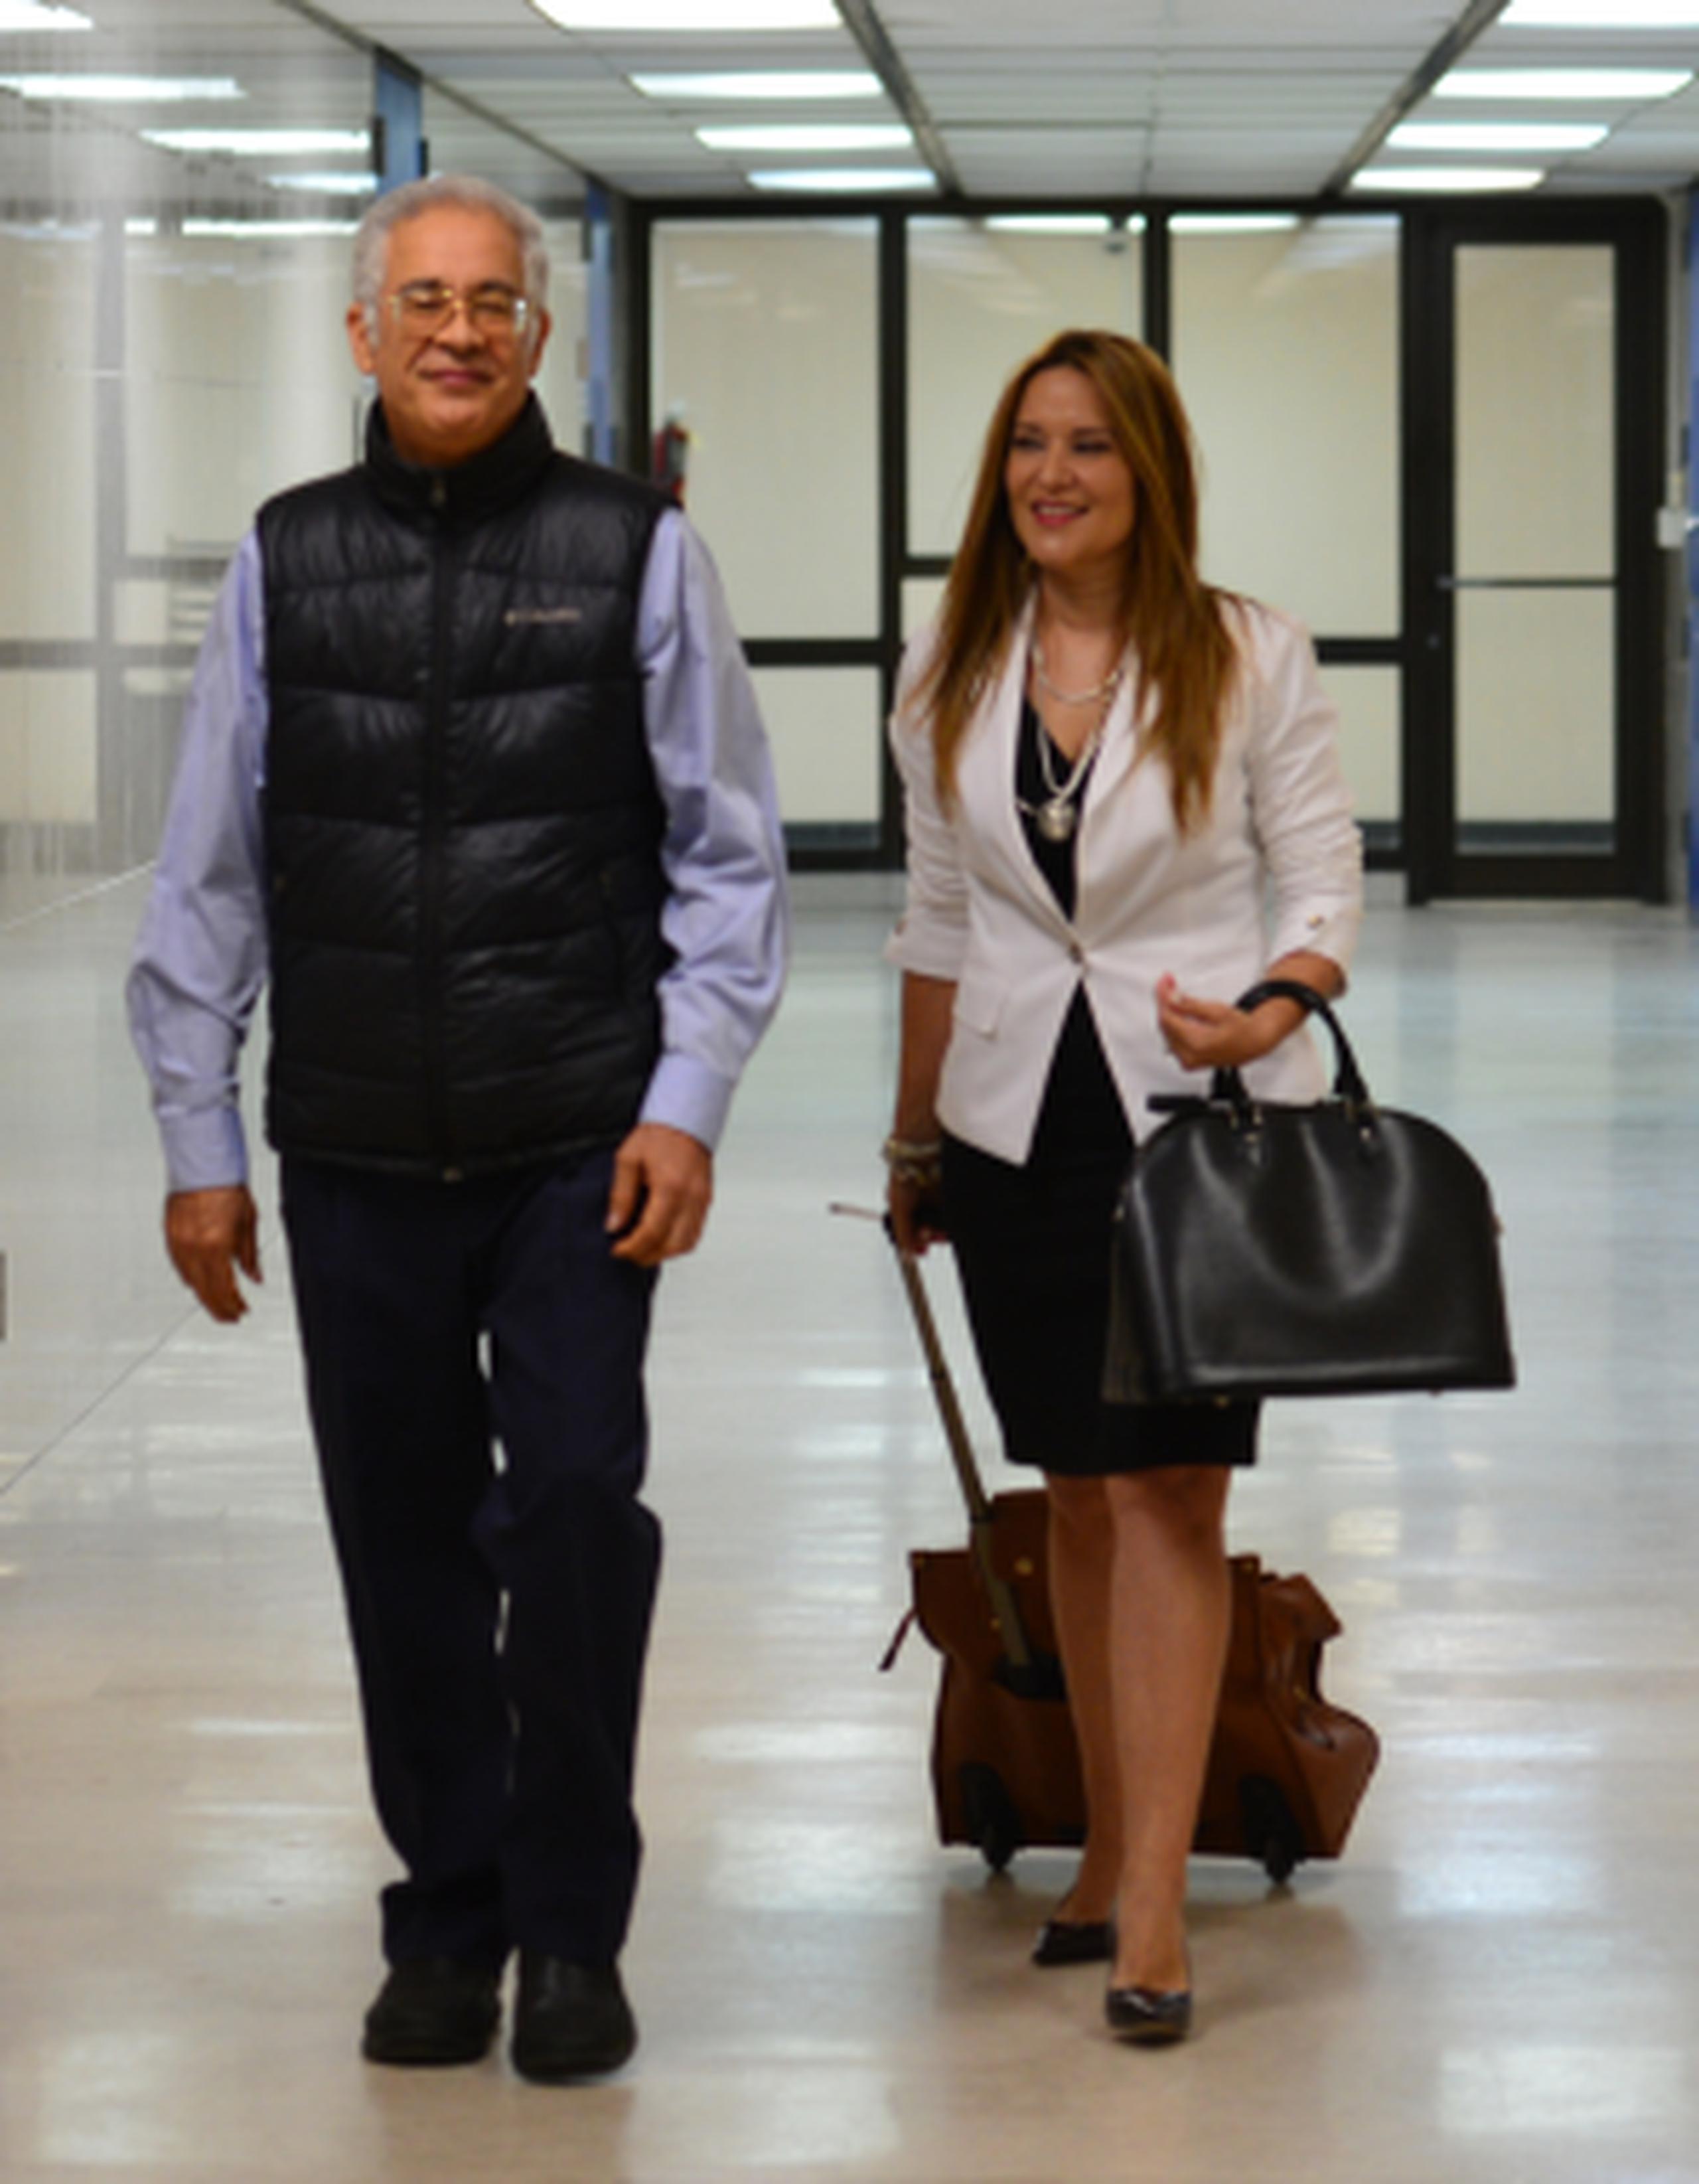 El oncólogo Sigfredo Acaron y su abogada Mercedes Montalvo, en el pasillo del tribunal donde se ventila el pleito con SSS. (luis.alcaladelolmo@gfrmedia.com)